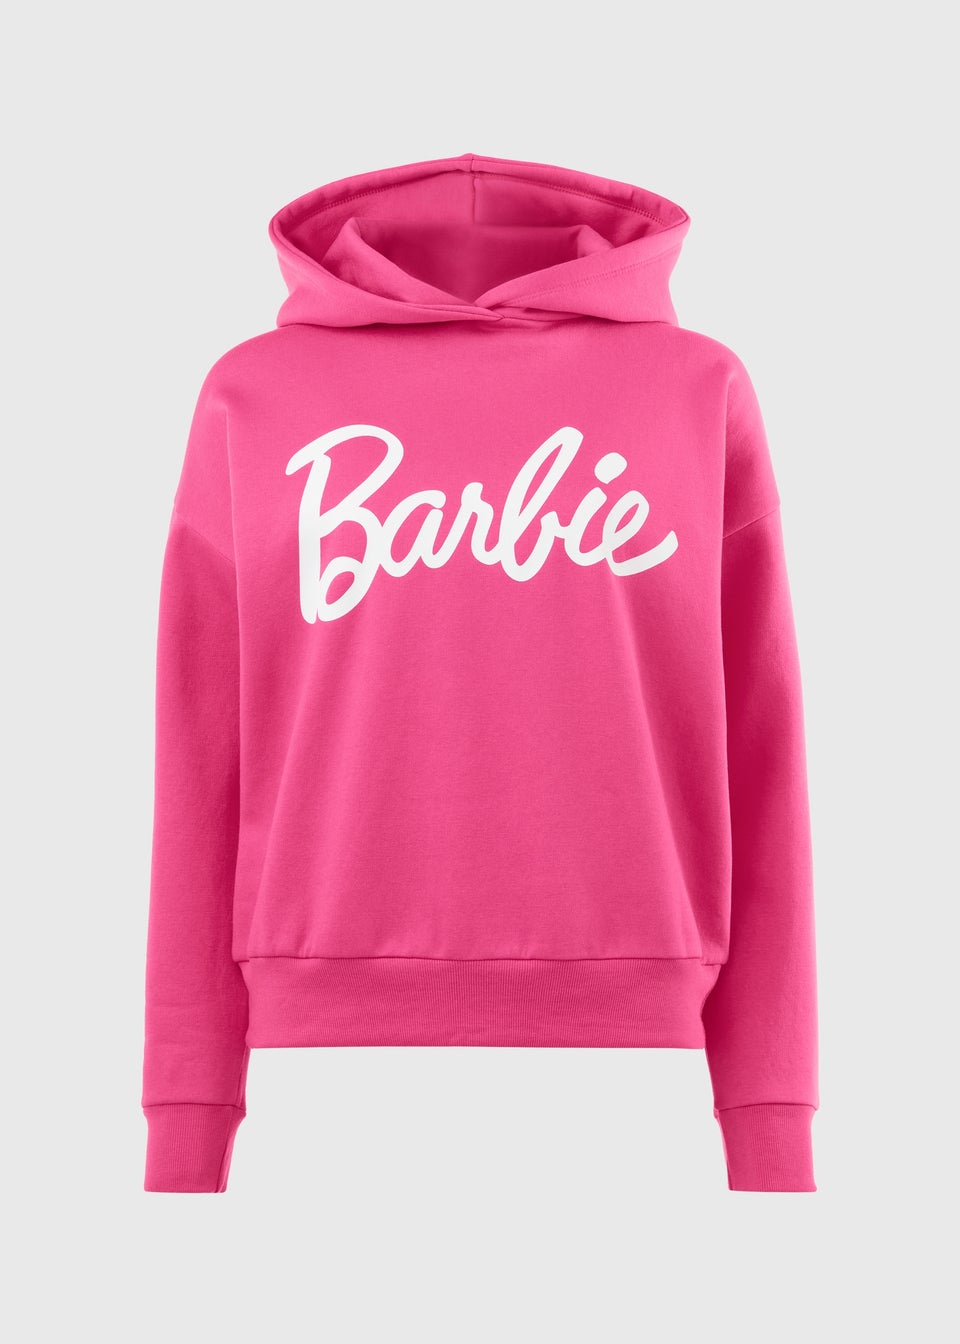 Barbie Pink Hoodie